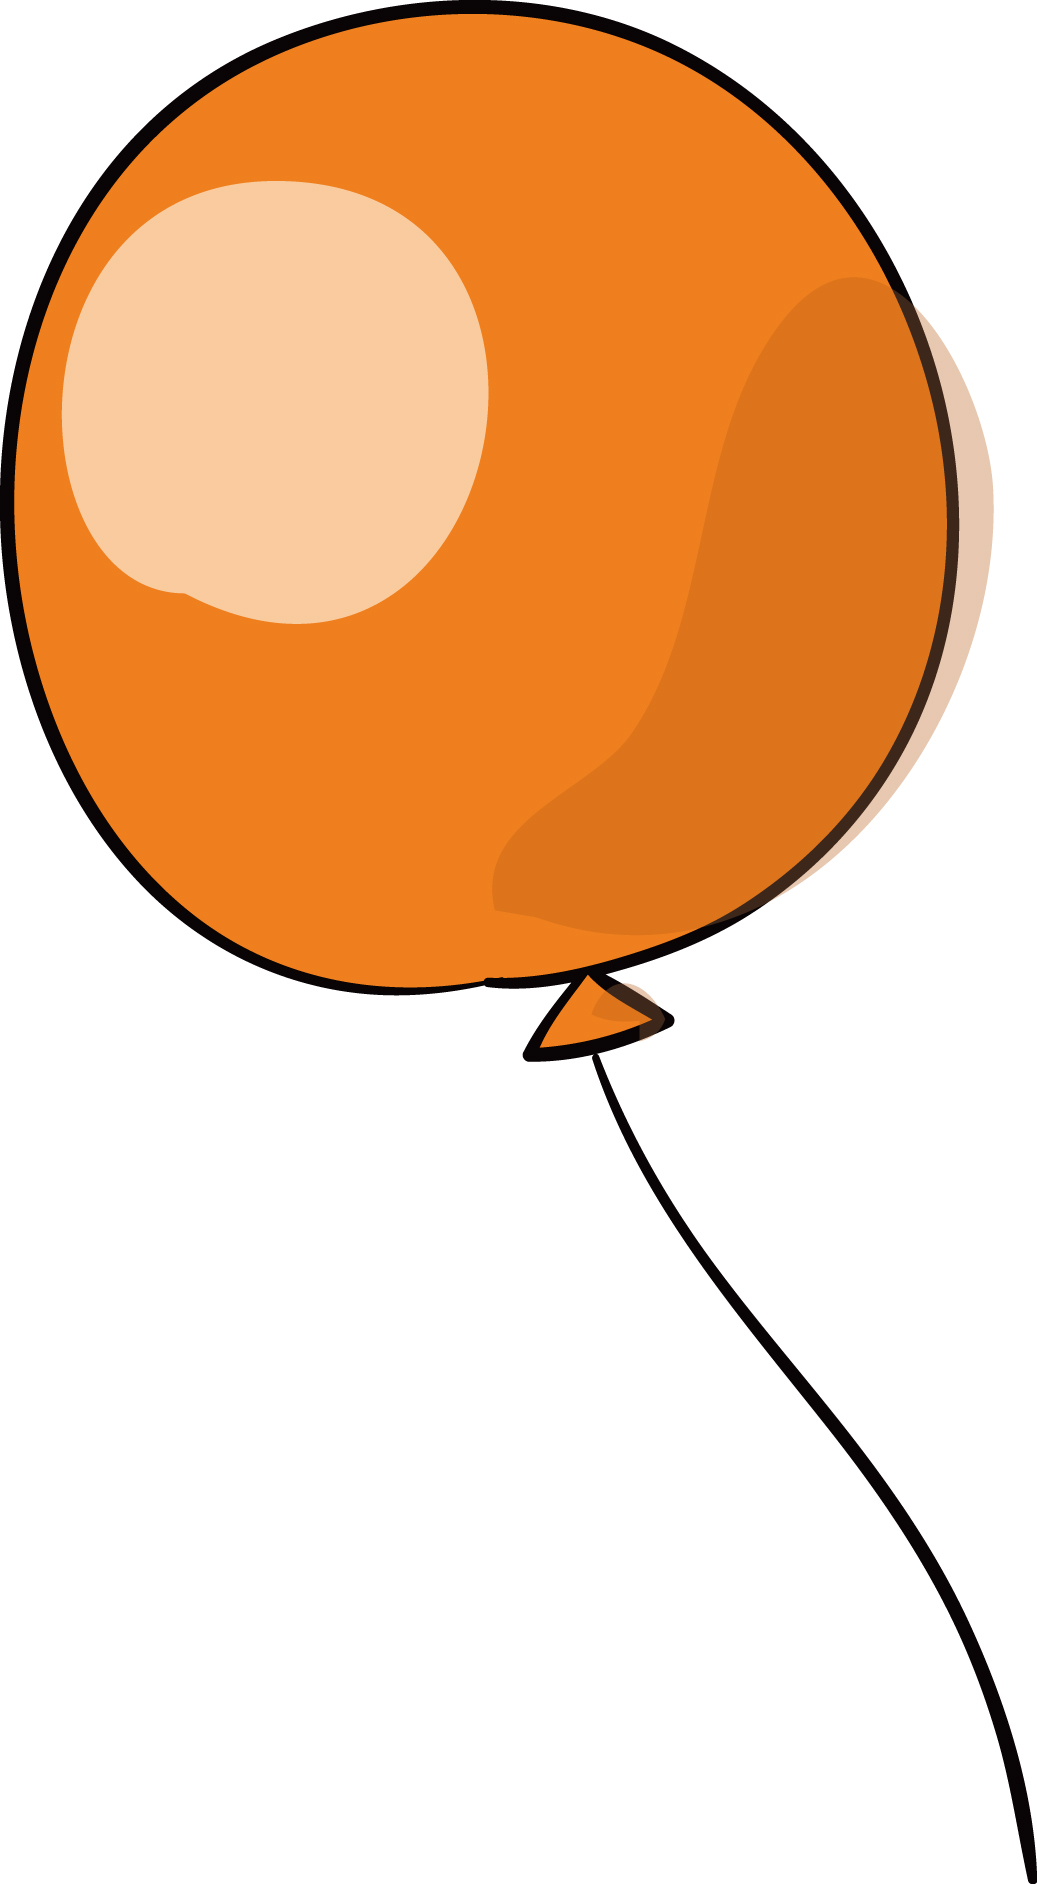 無料イラスト素材 オレンジの風船 ダウンロード